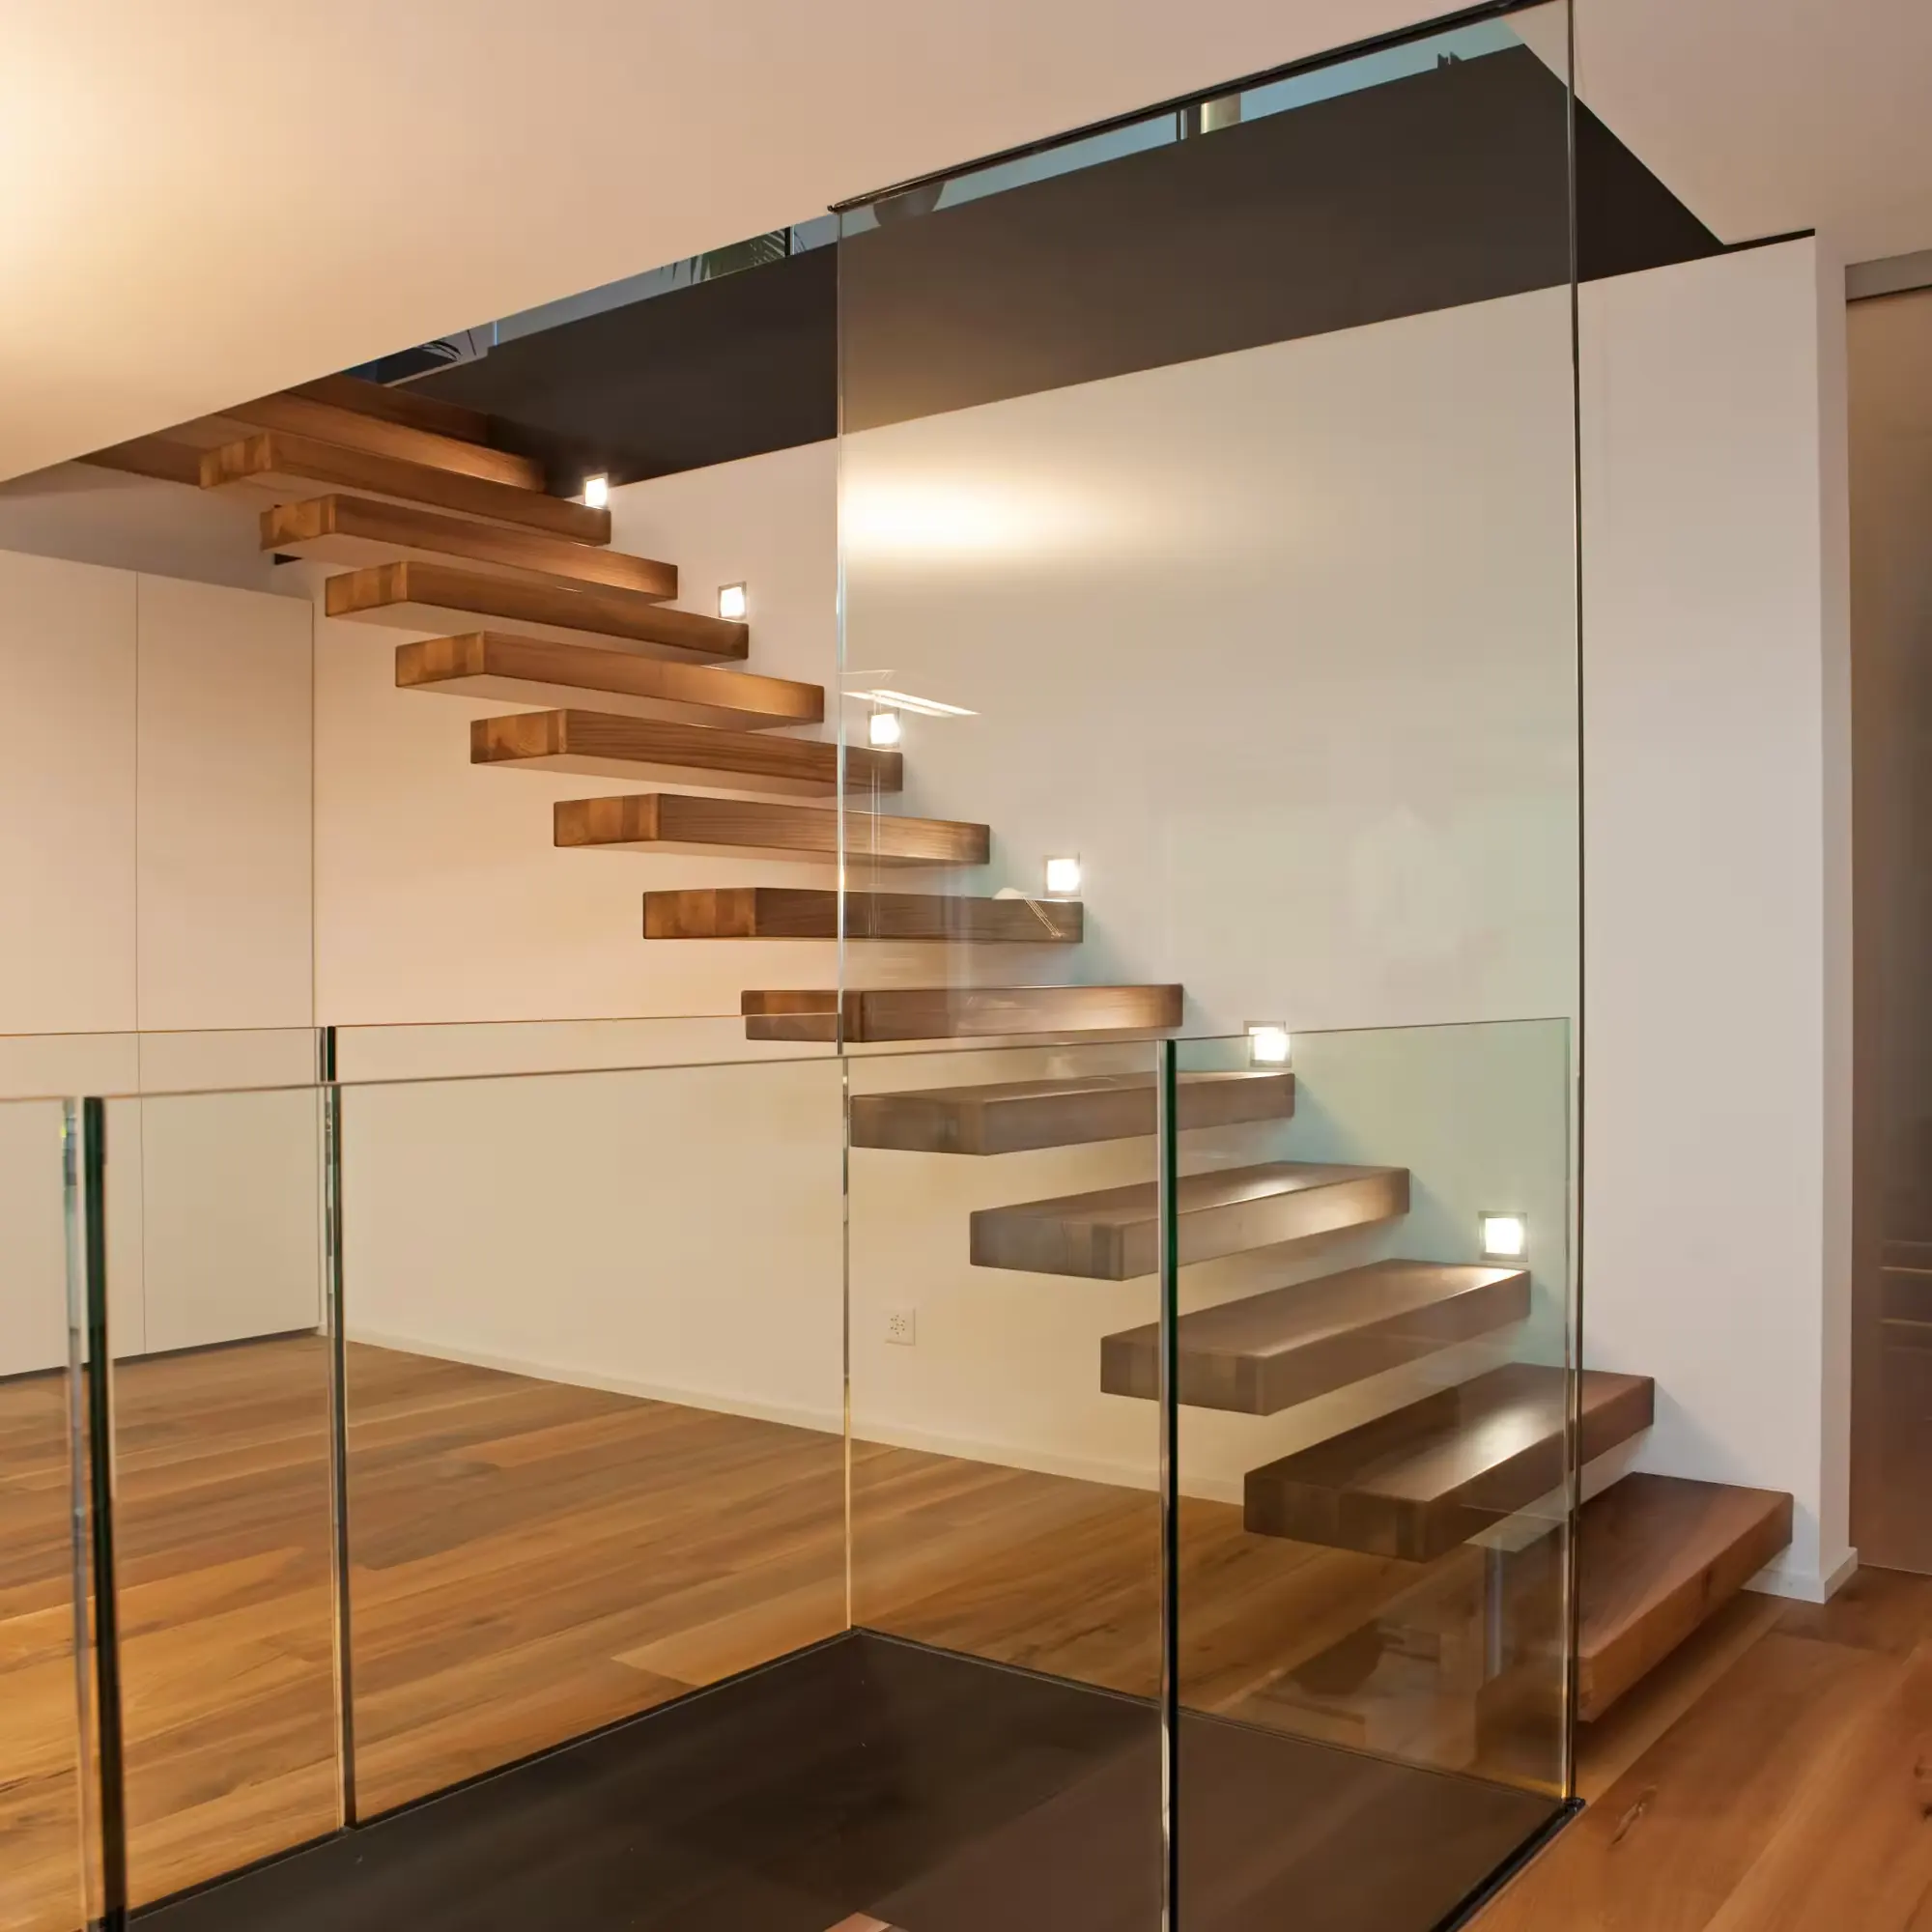 Amérique vente chaude marches en bois massif design moderne escalier flottant